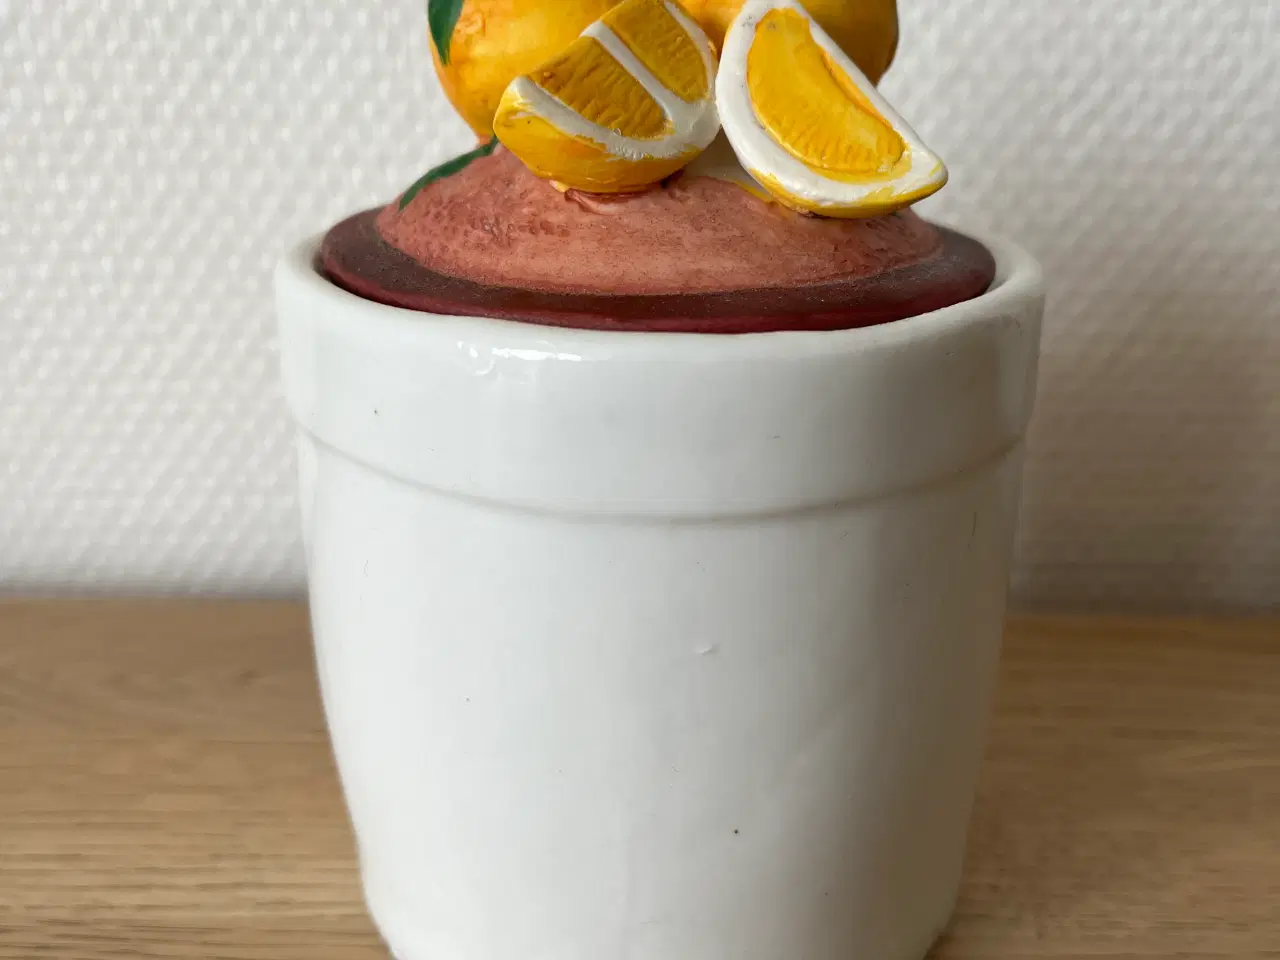 Billede 1 - Marmeladekrukke med appelsin-dekoration på låget